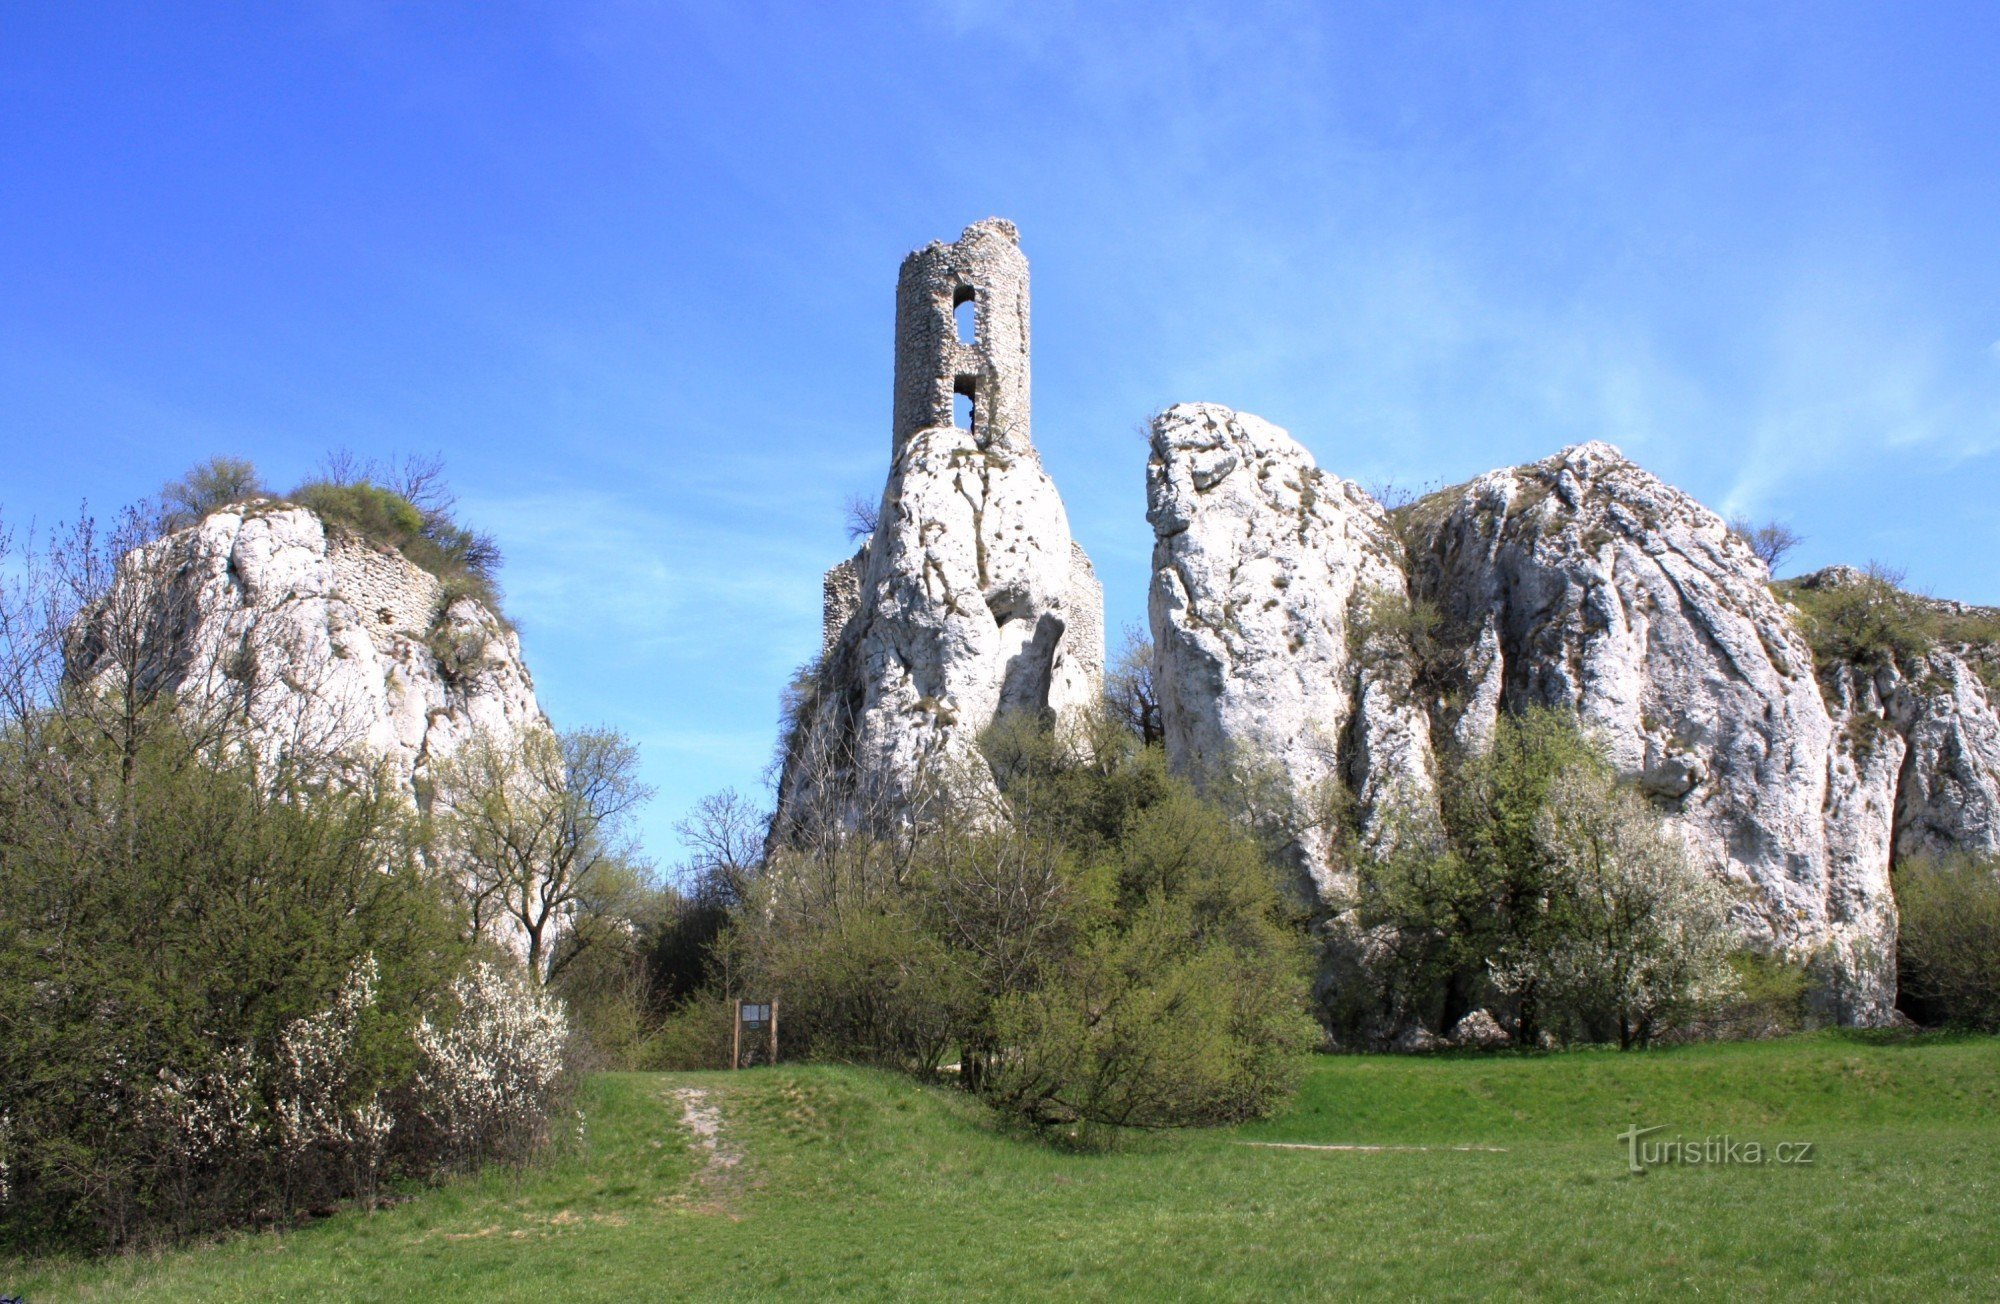 Общий вид скальных башен с поляны